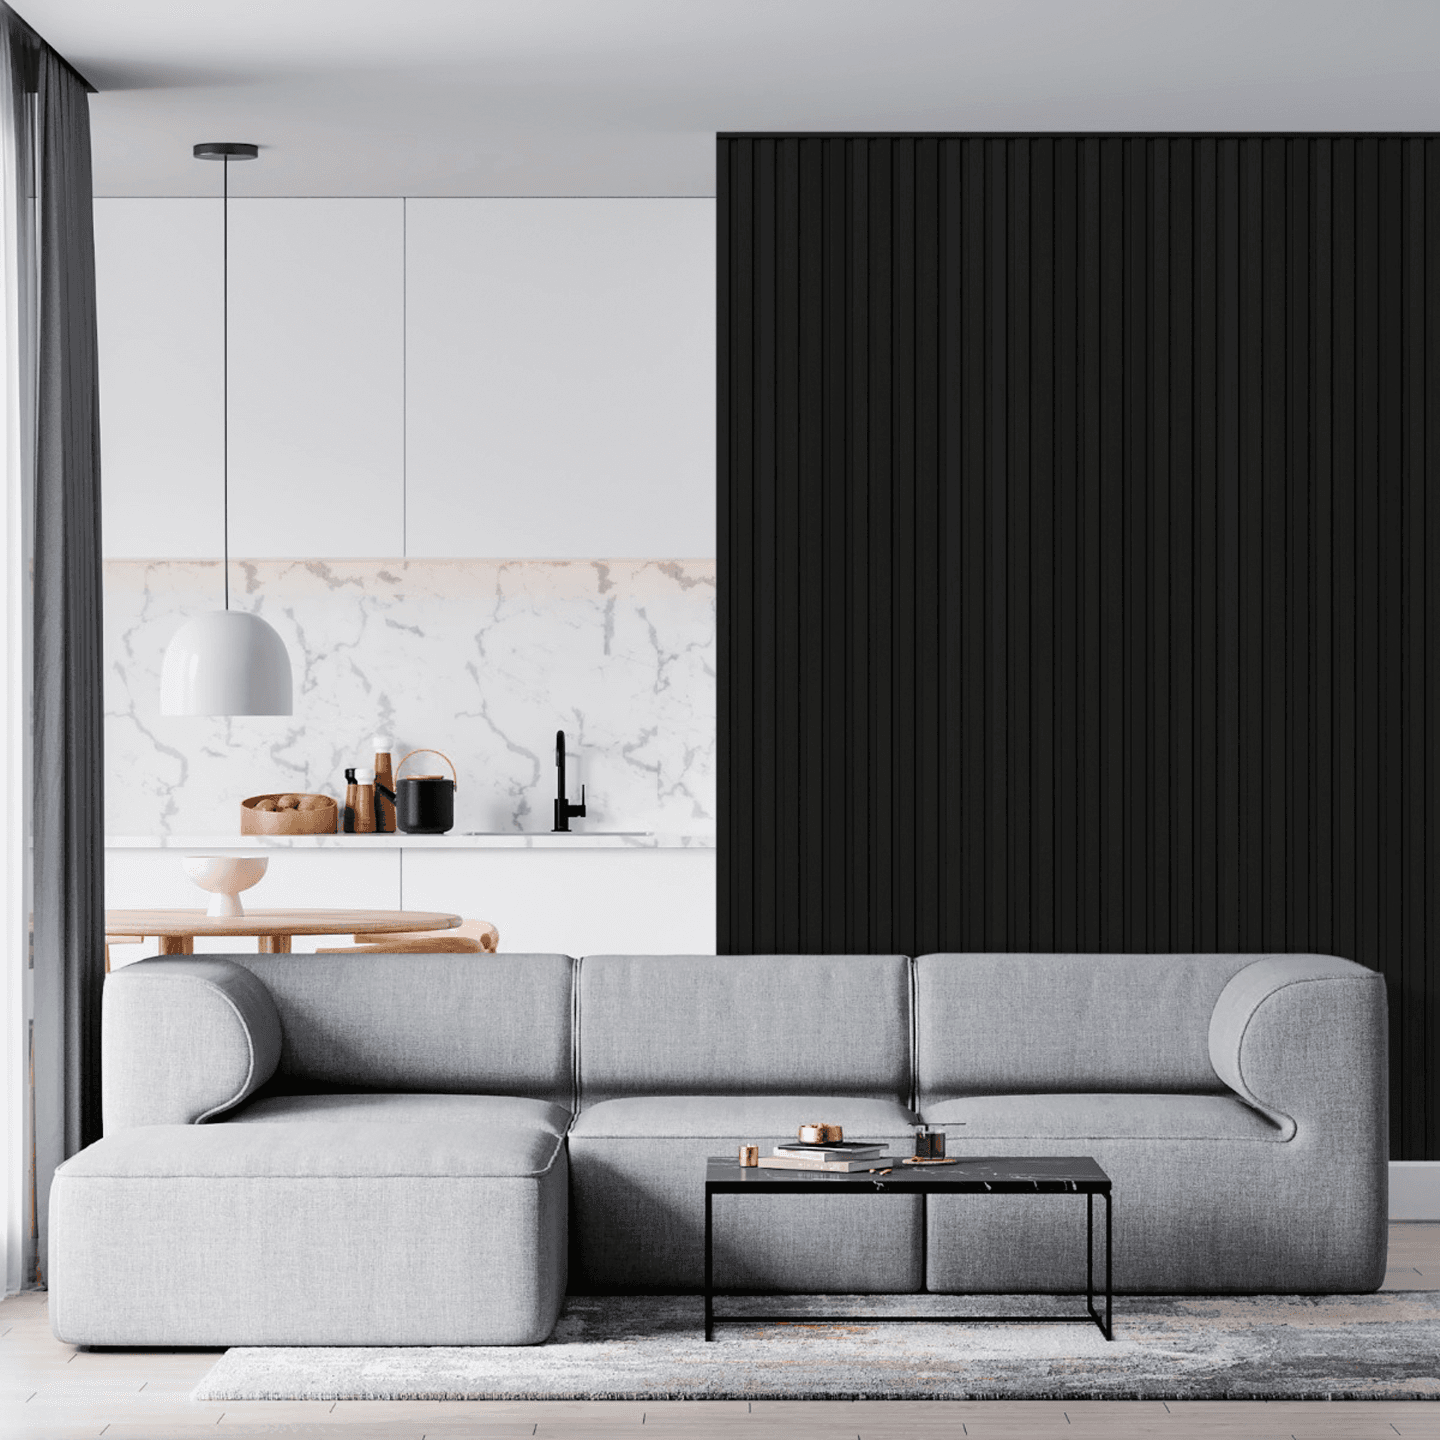 Imagem de uma sala com painéis ripados pretos nas paredes e com um sofá cinza.